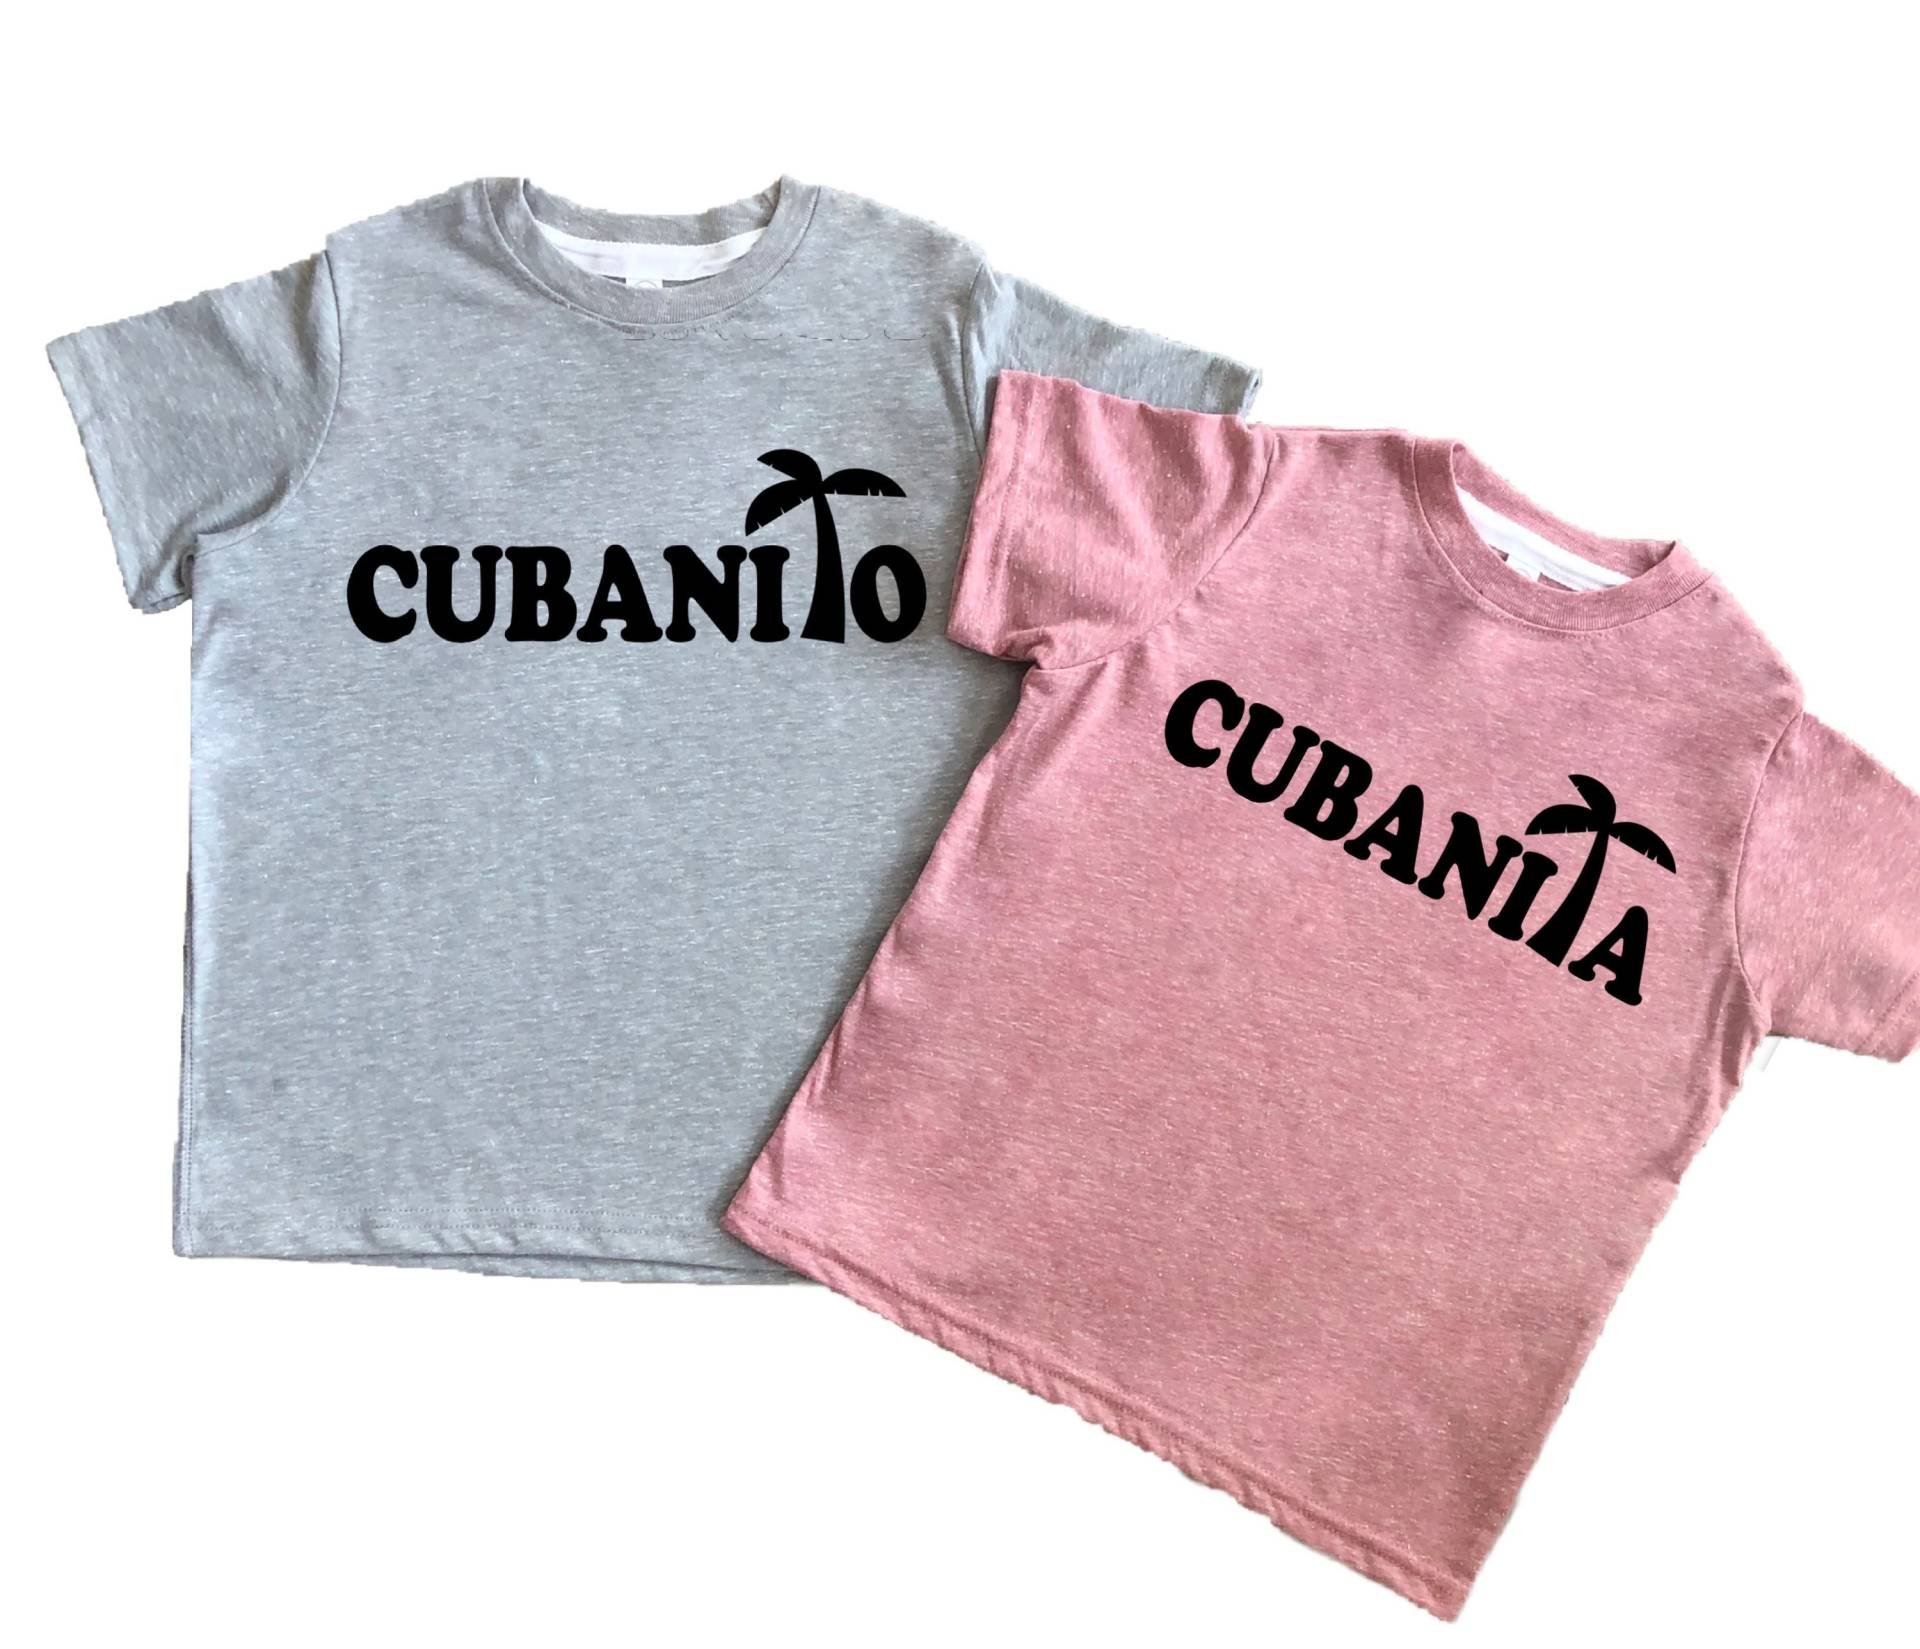 Cubanita Oder Cubanito T-Shirt, Havanna Cuba Body T-Shirt Für Babys, Kleinkinder, Kinder, Mädchen Und Jungen von RyLexDesign